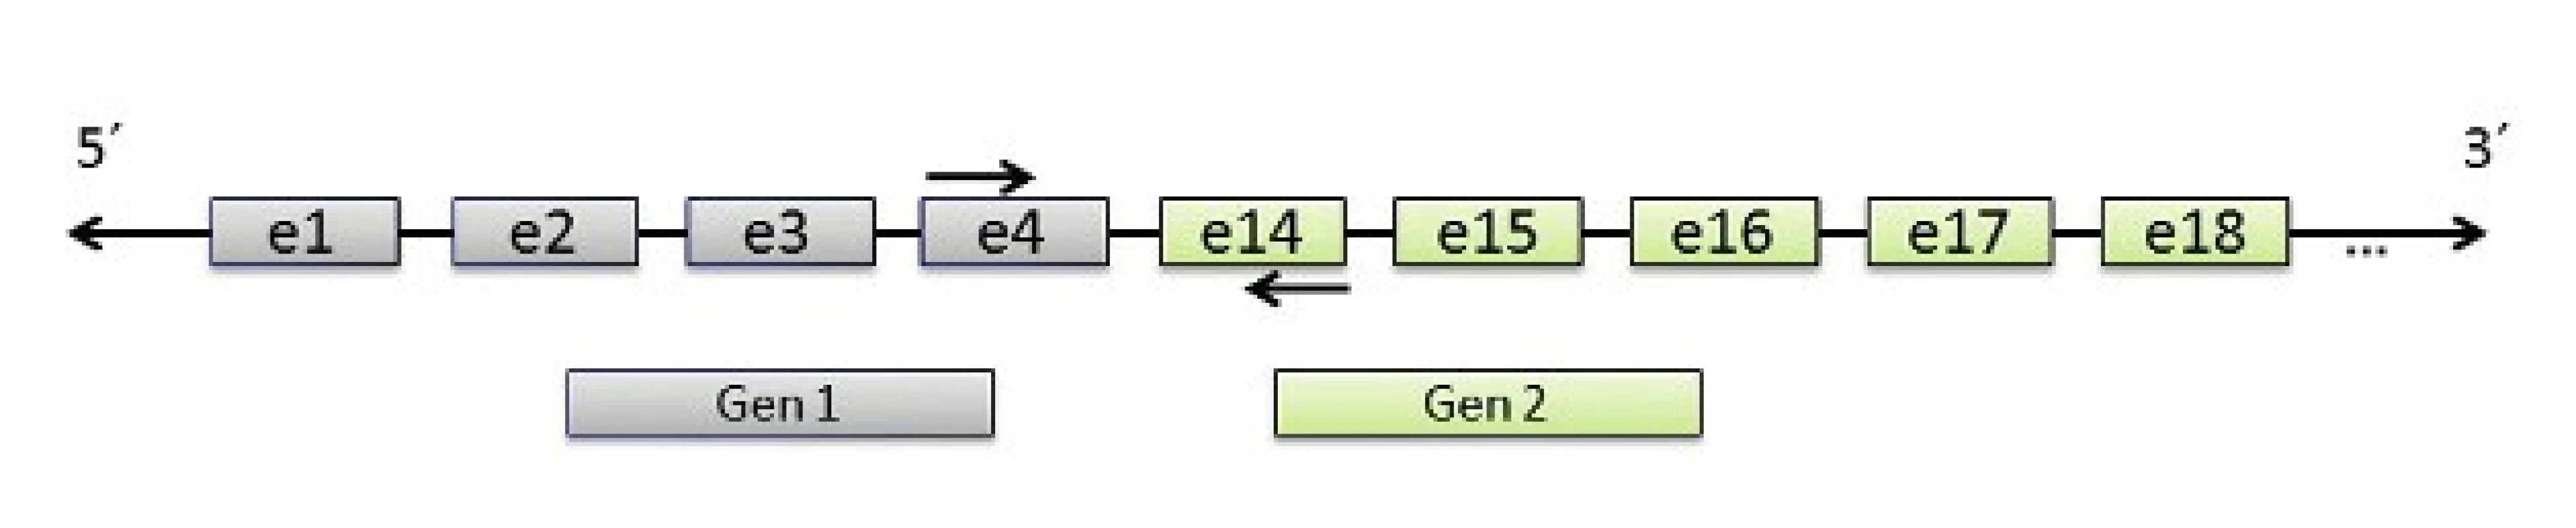 Schematické zobrazení principu detekce fúzního transkriptu genů 1 a 2 pomocí RT-PCR. Zobrazena fúze mezi exonem 4 Genu 1 a exonem 14 Genu 2.